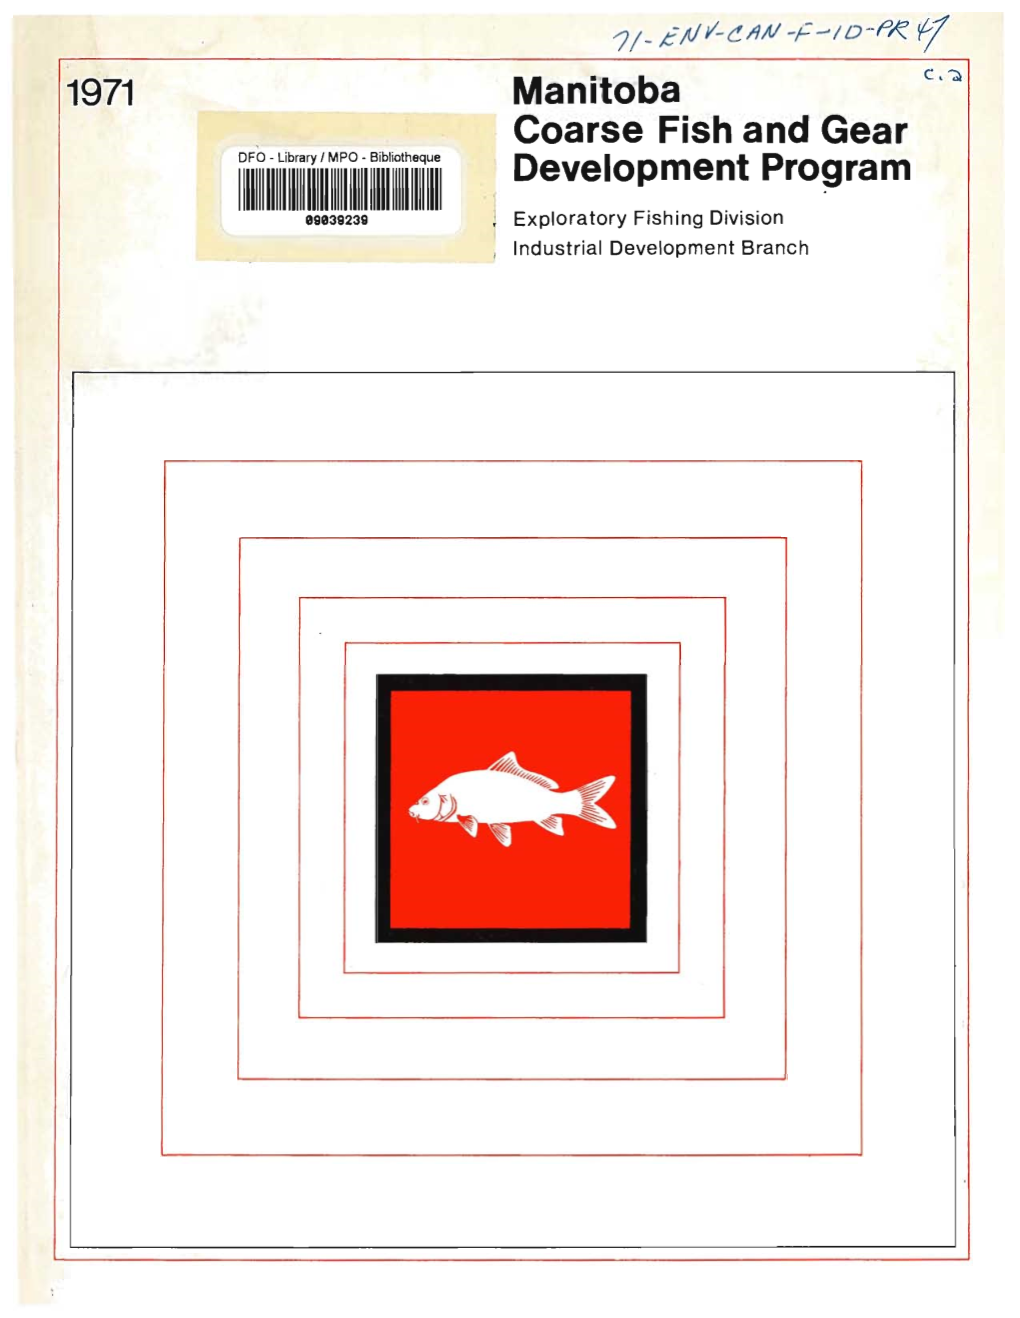 Manitoba Coarse Fish and Gear Development Program